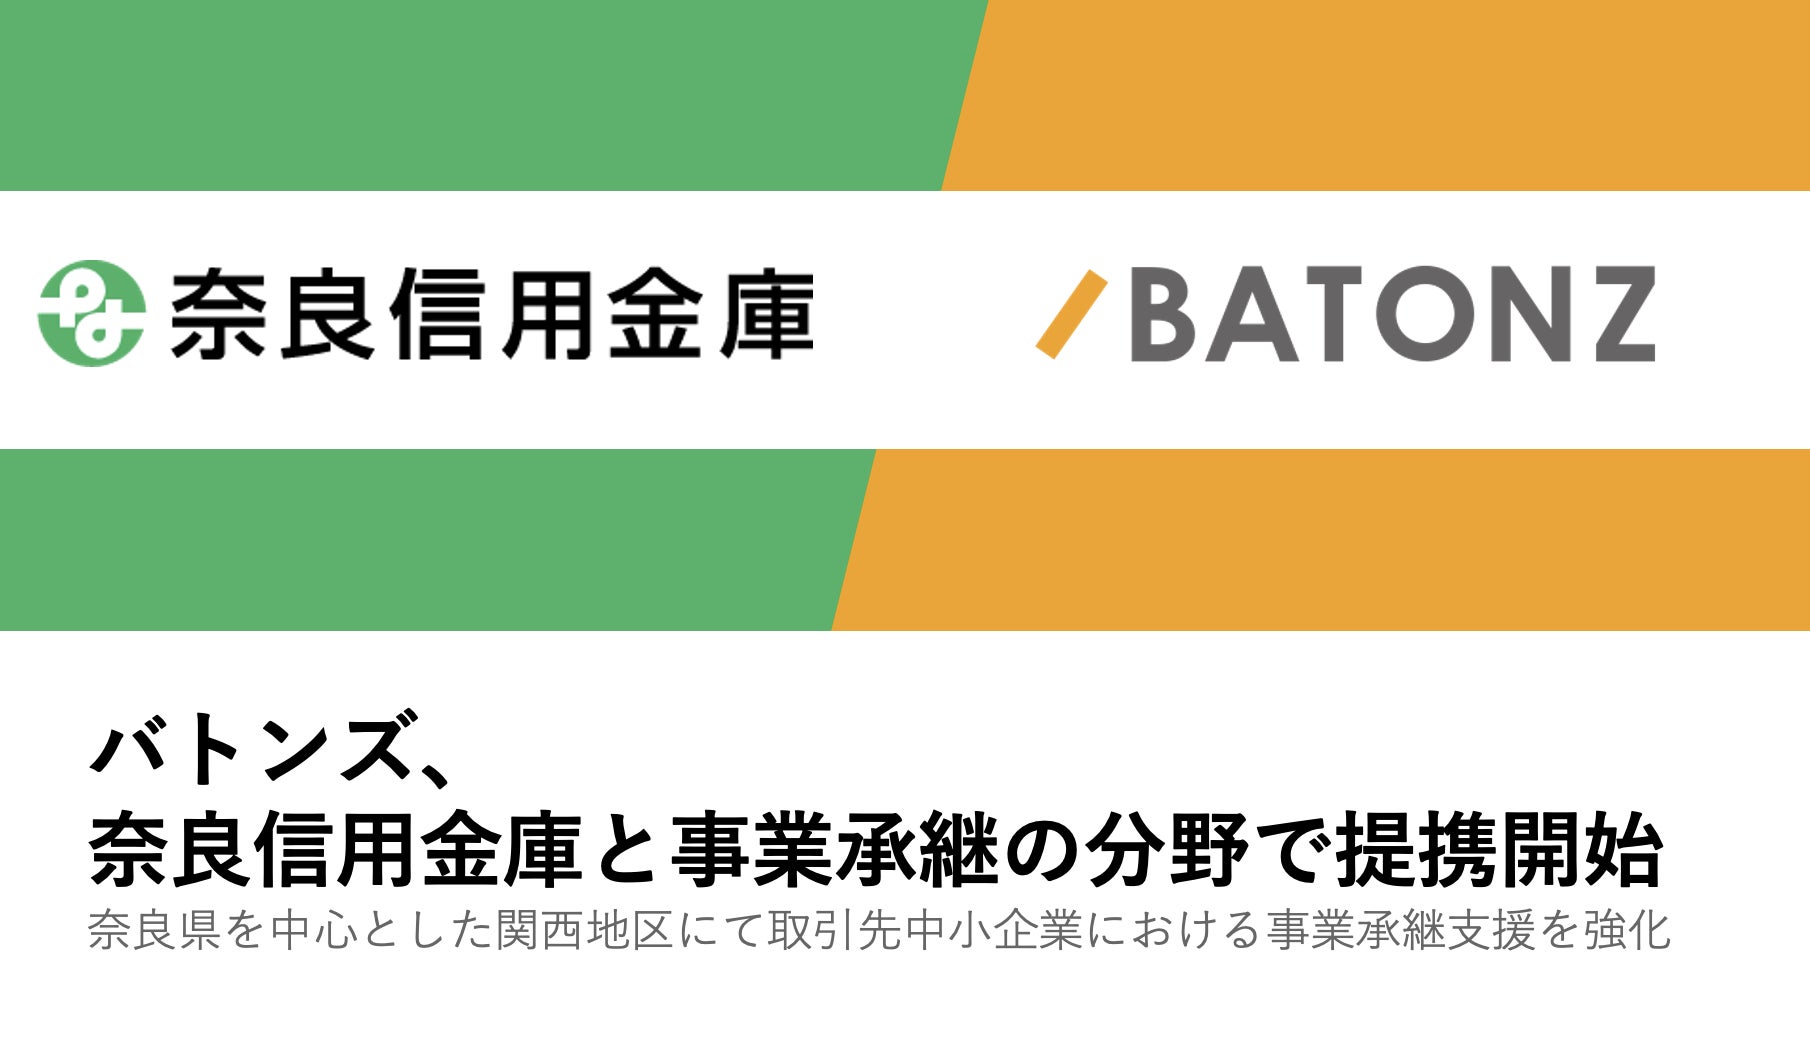 【平塚信用金庫】神奈川県信用保証協会より金融機関表彰を受けました